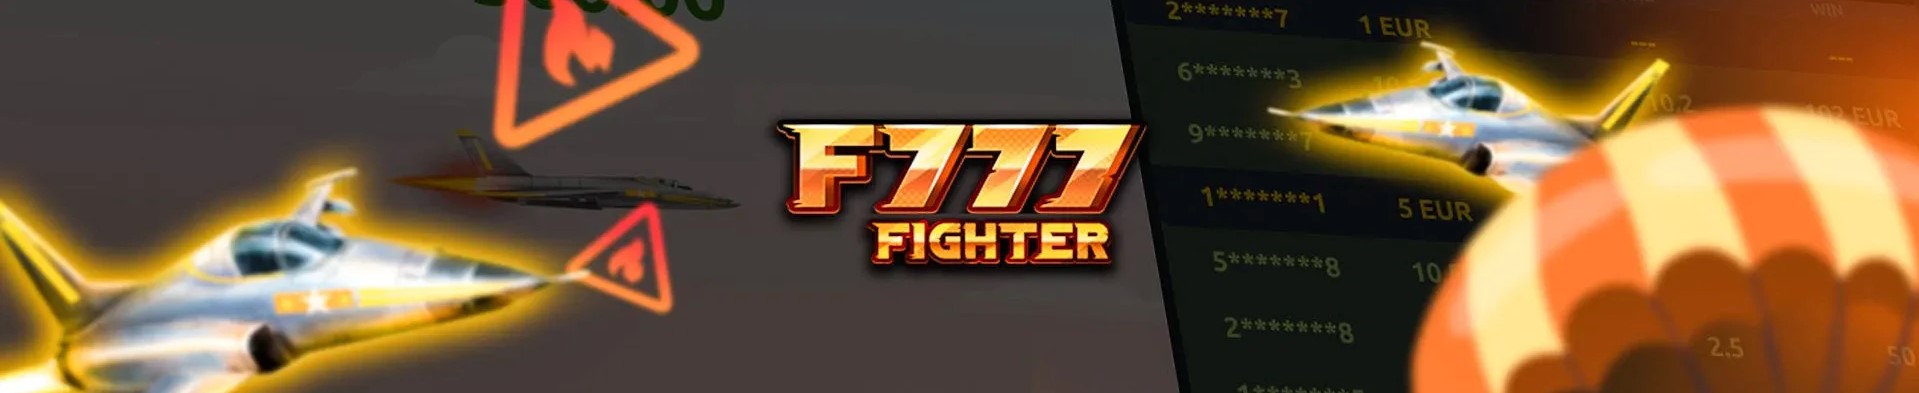 F777 fighter spil.